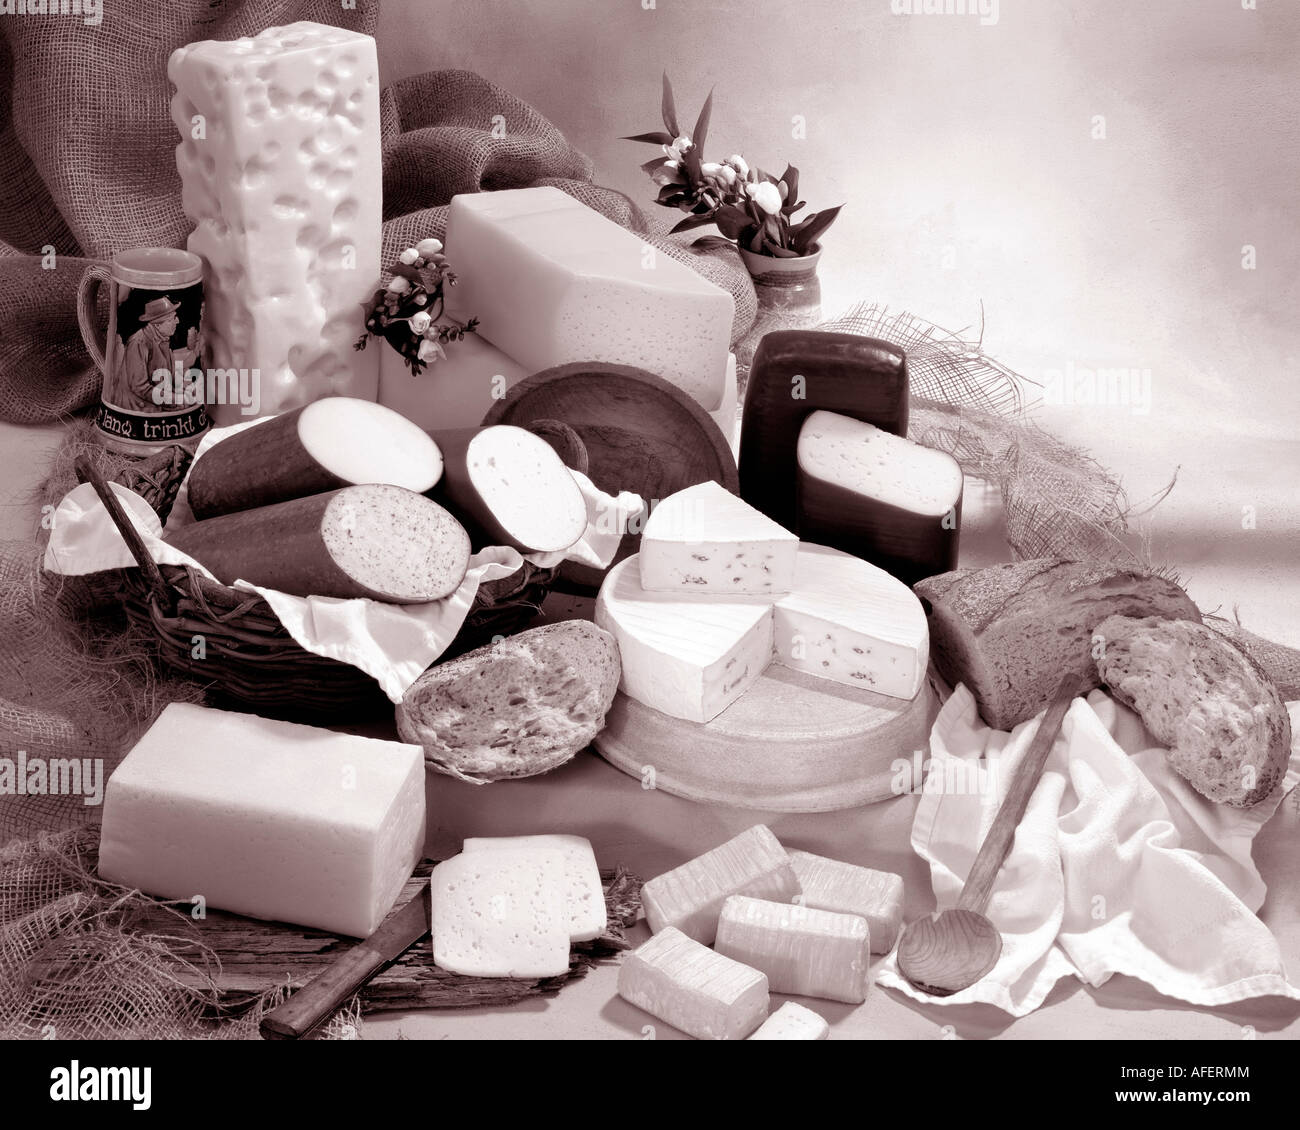 Deutschen Käse in Sepia von Gruppenfoto auf Warm getönten gesprenkelte Hintergrund. Querformat, Studio Tischplatte. Klassisches Bild. Stockfoto